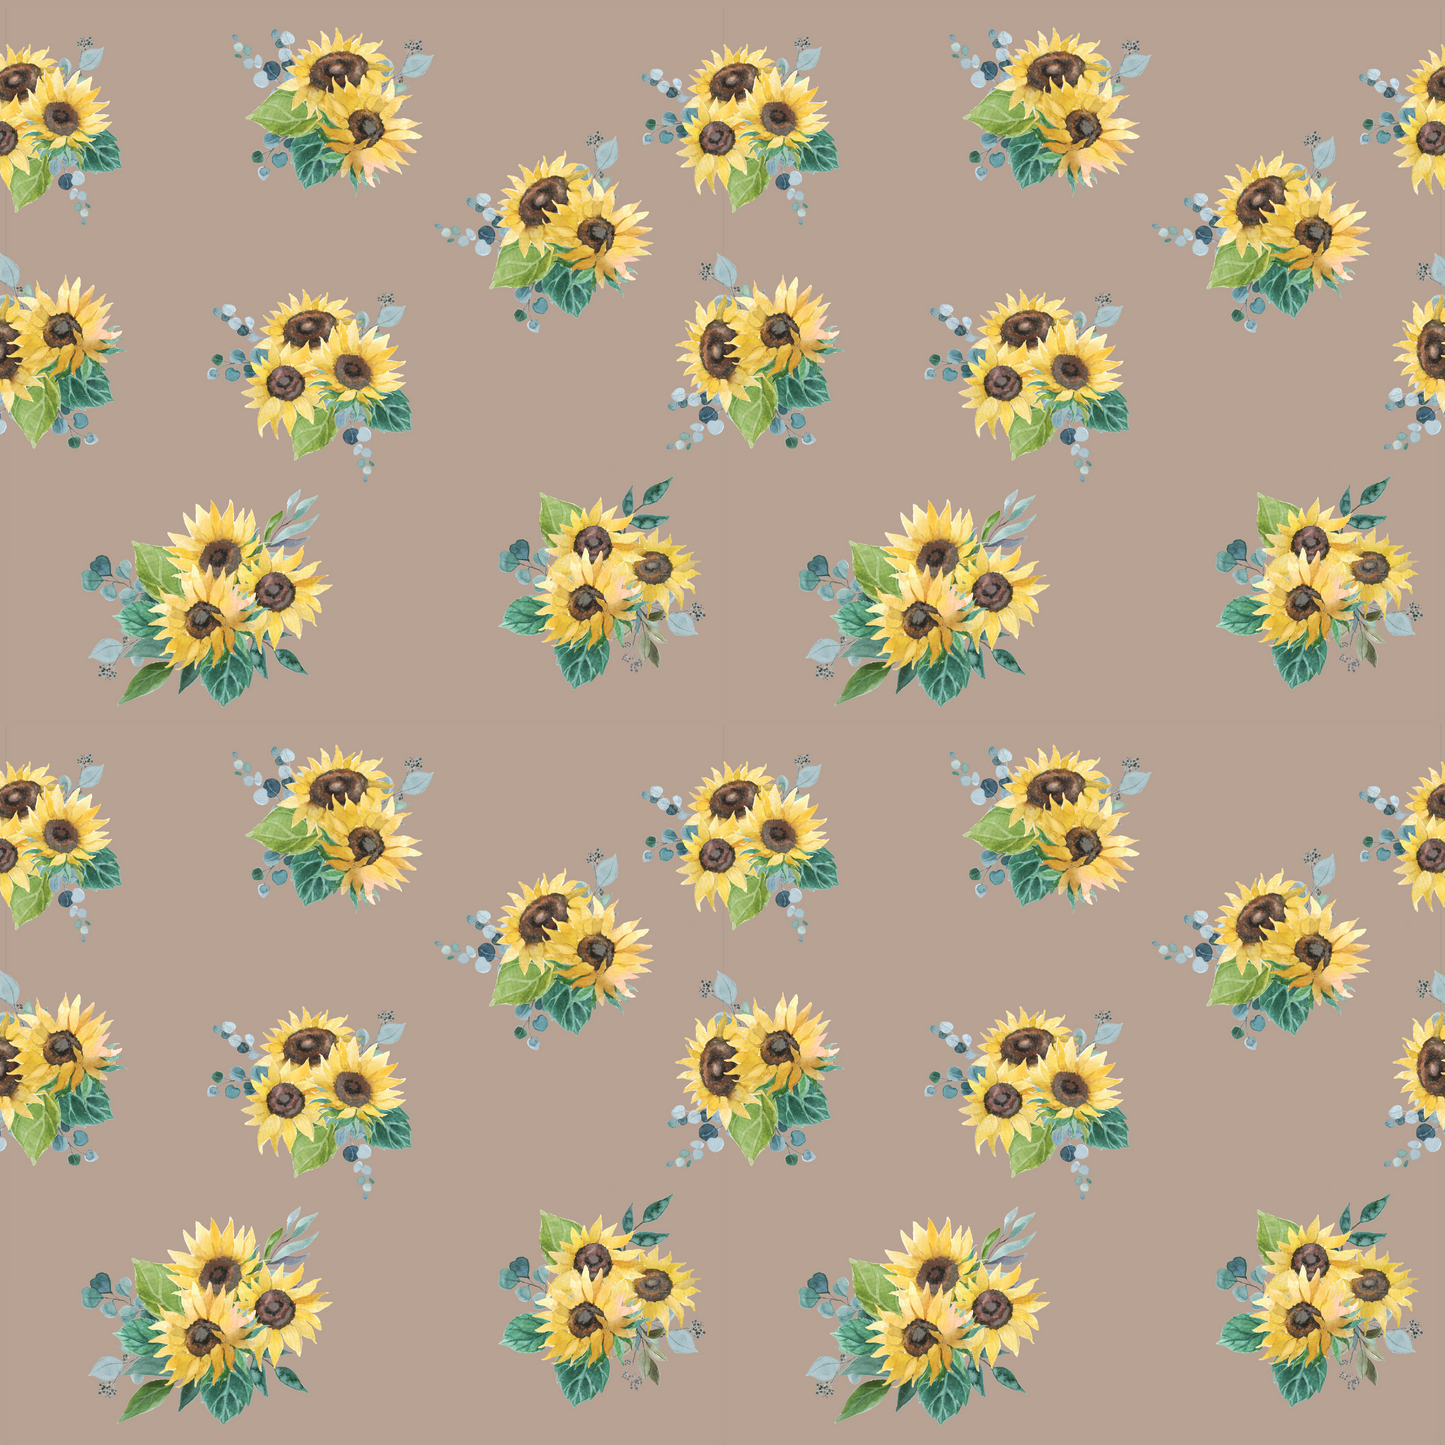 Sunflowers - Sunflowers 002